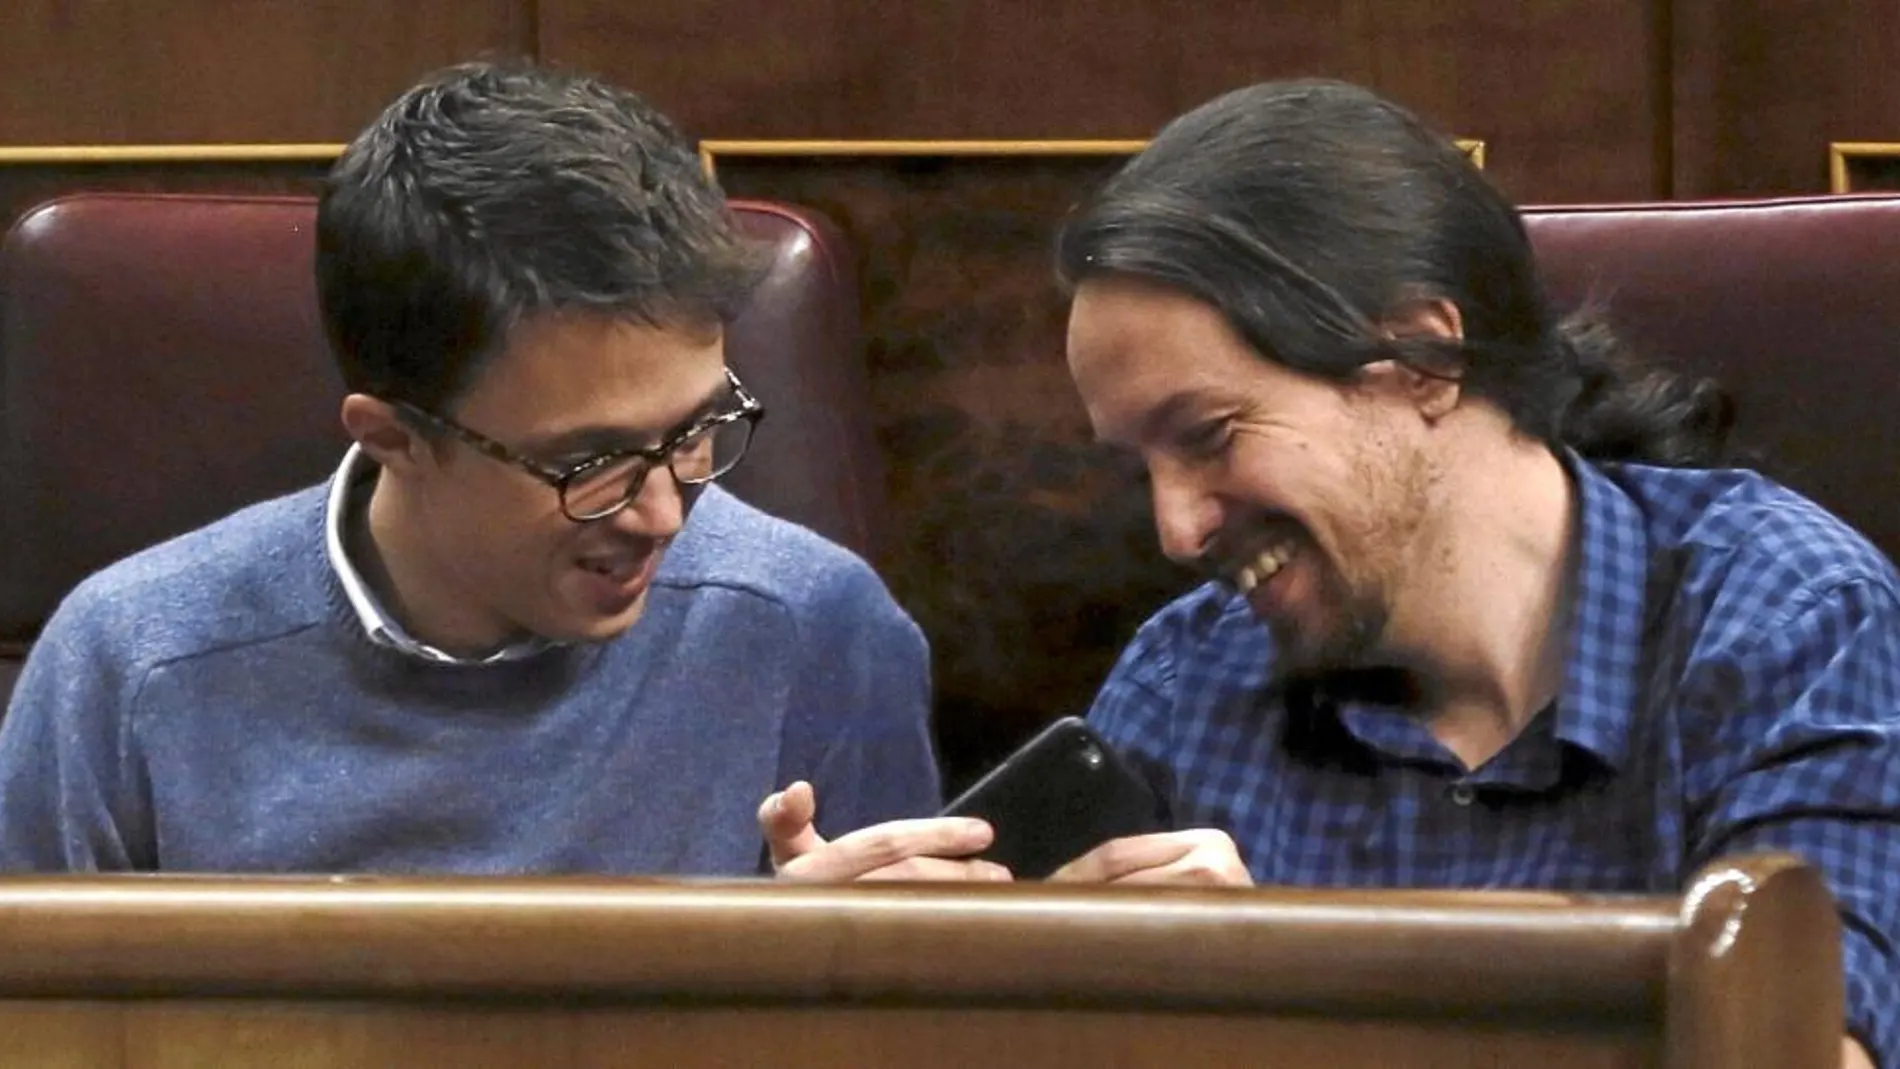 Iñigo Errejón y Pablo Iglesias bromean en sus escaños del Congreso durante el Pleno de ayer